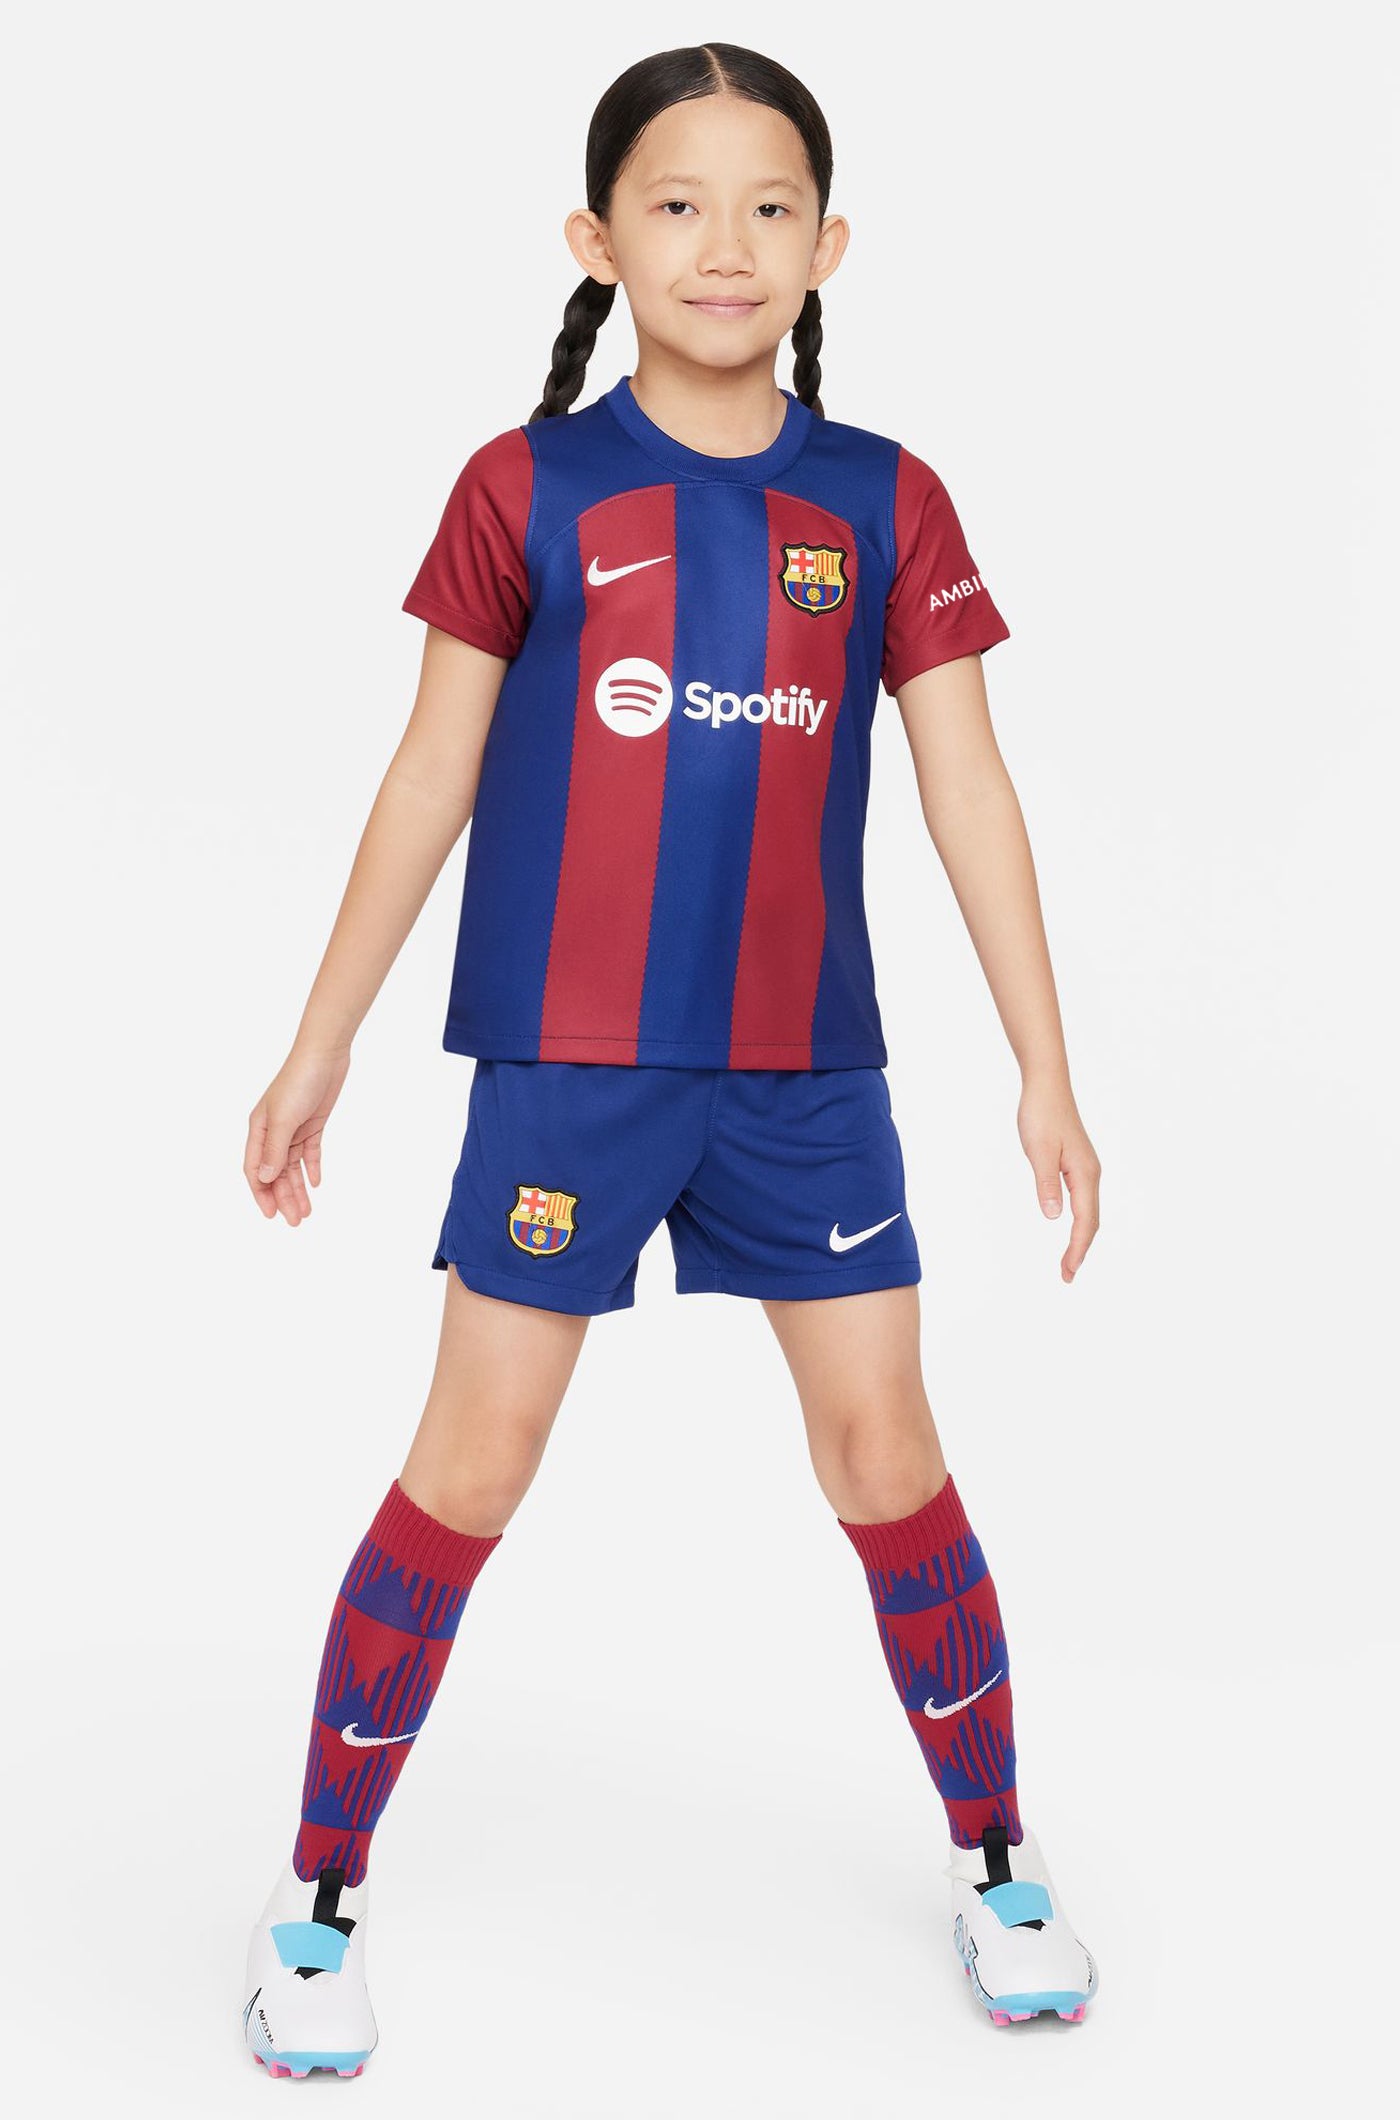 Conjunt primer equipament FC Barcelona 23/24 - Nen/a petit/a - S. ROBERTO  